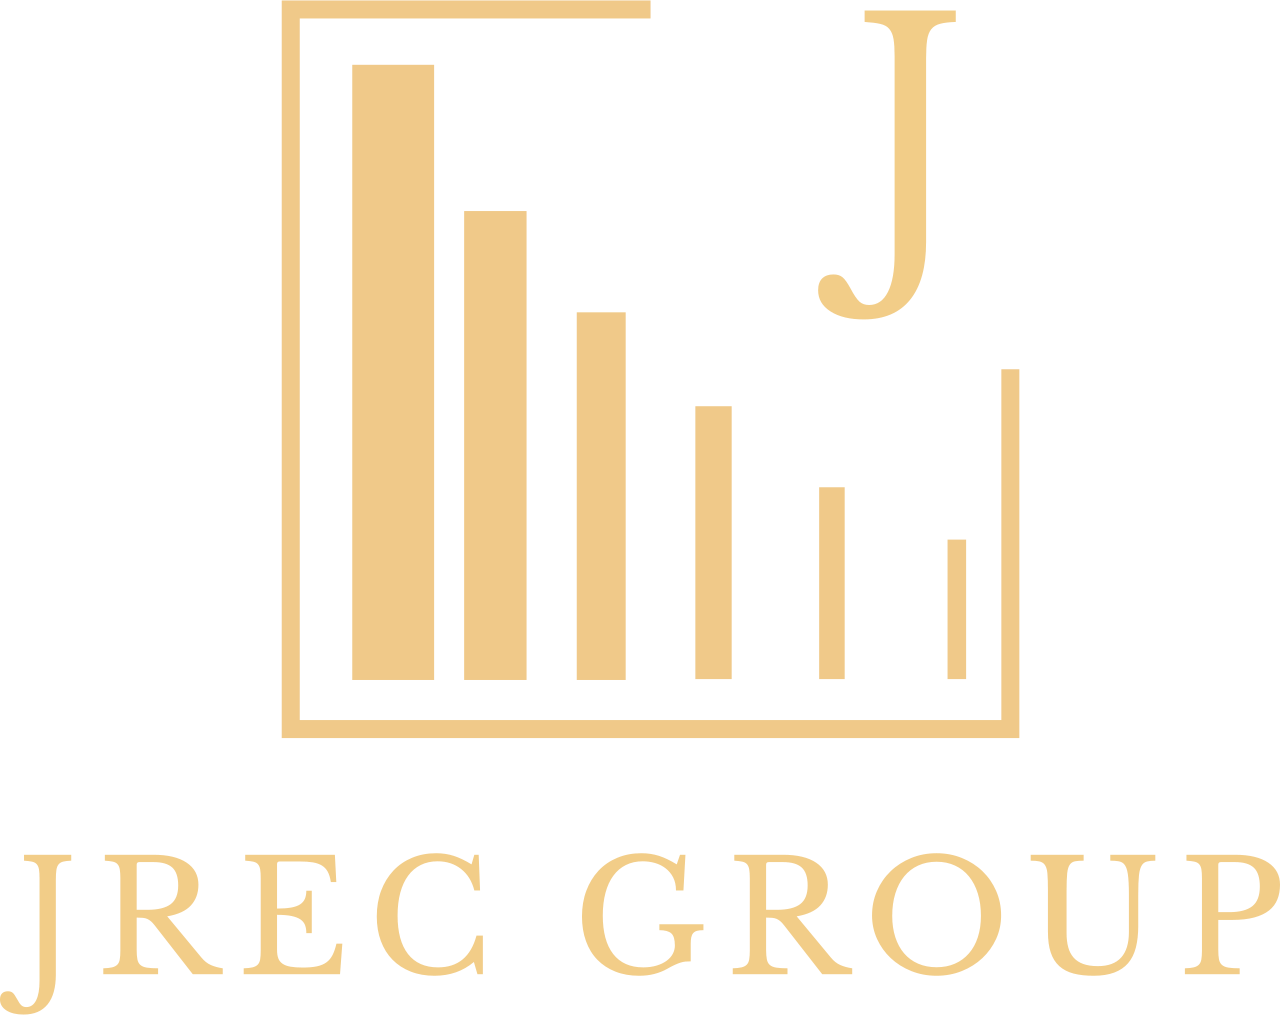 JREC GROUP's logo